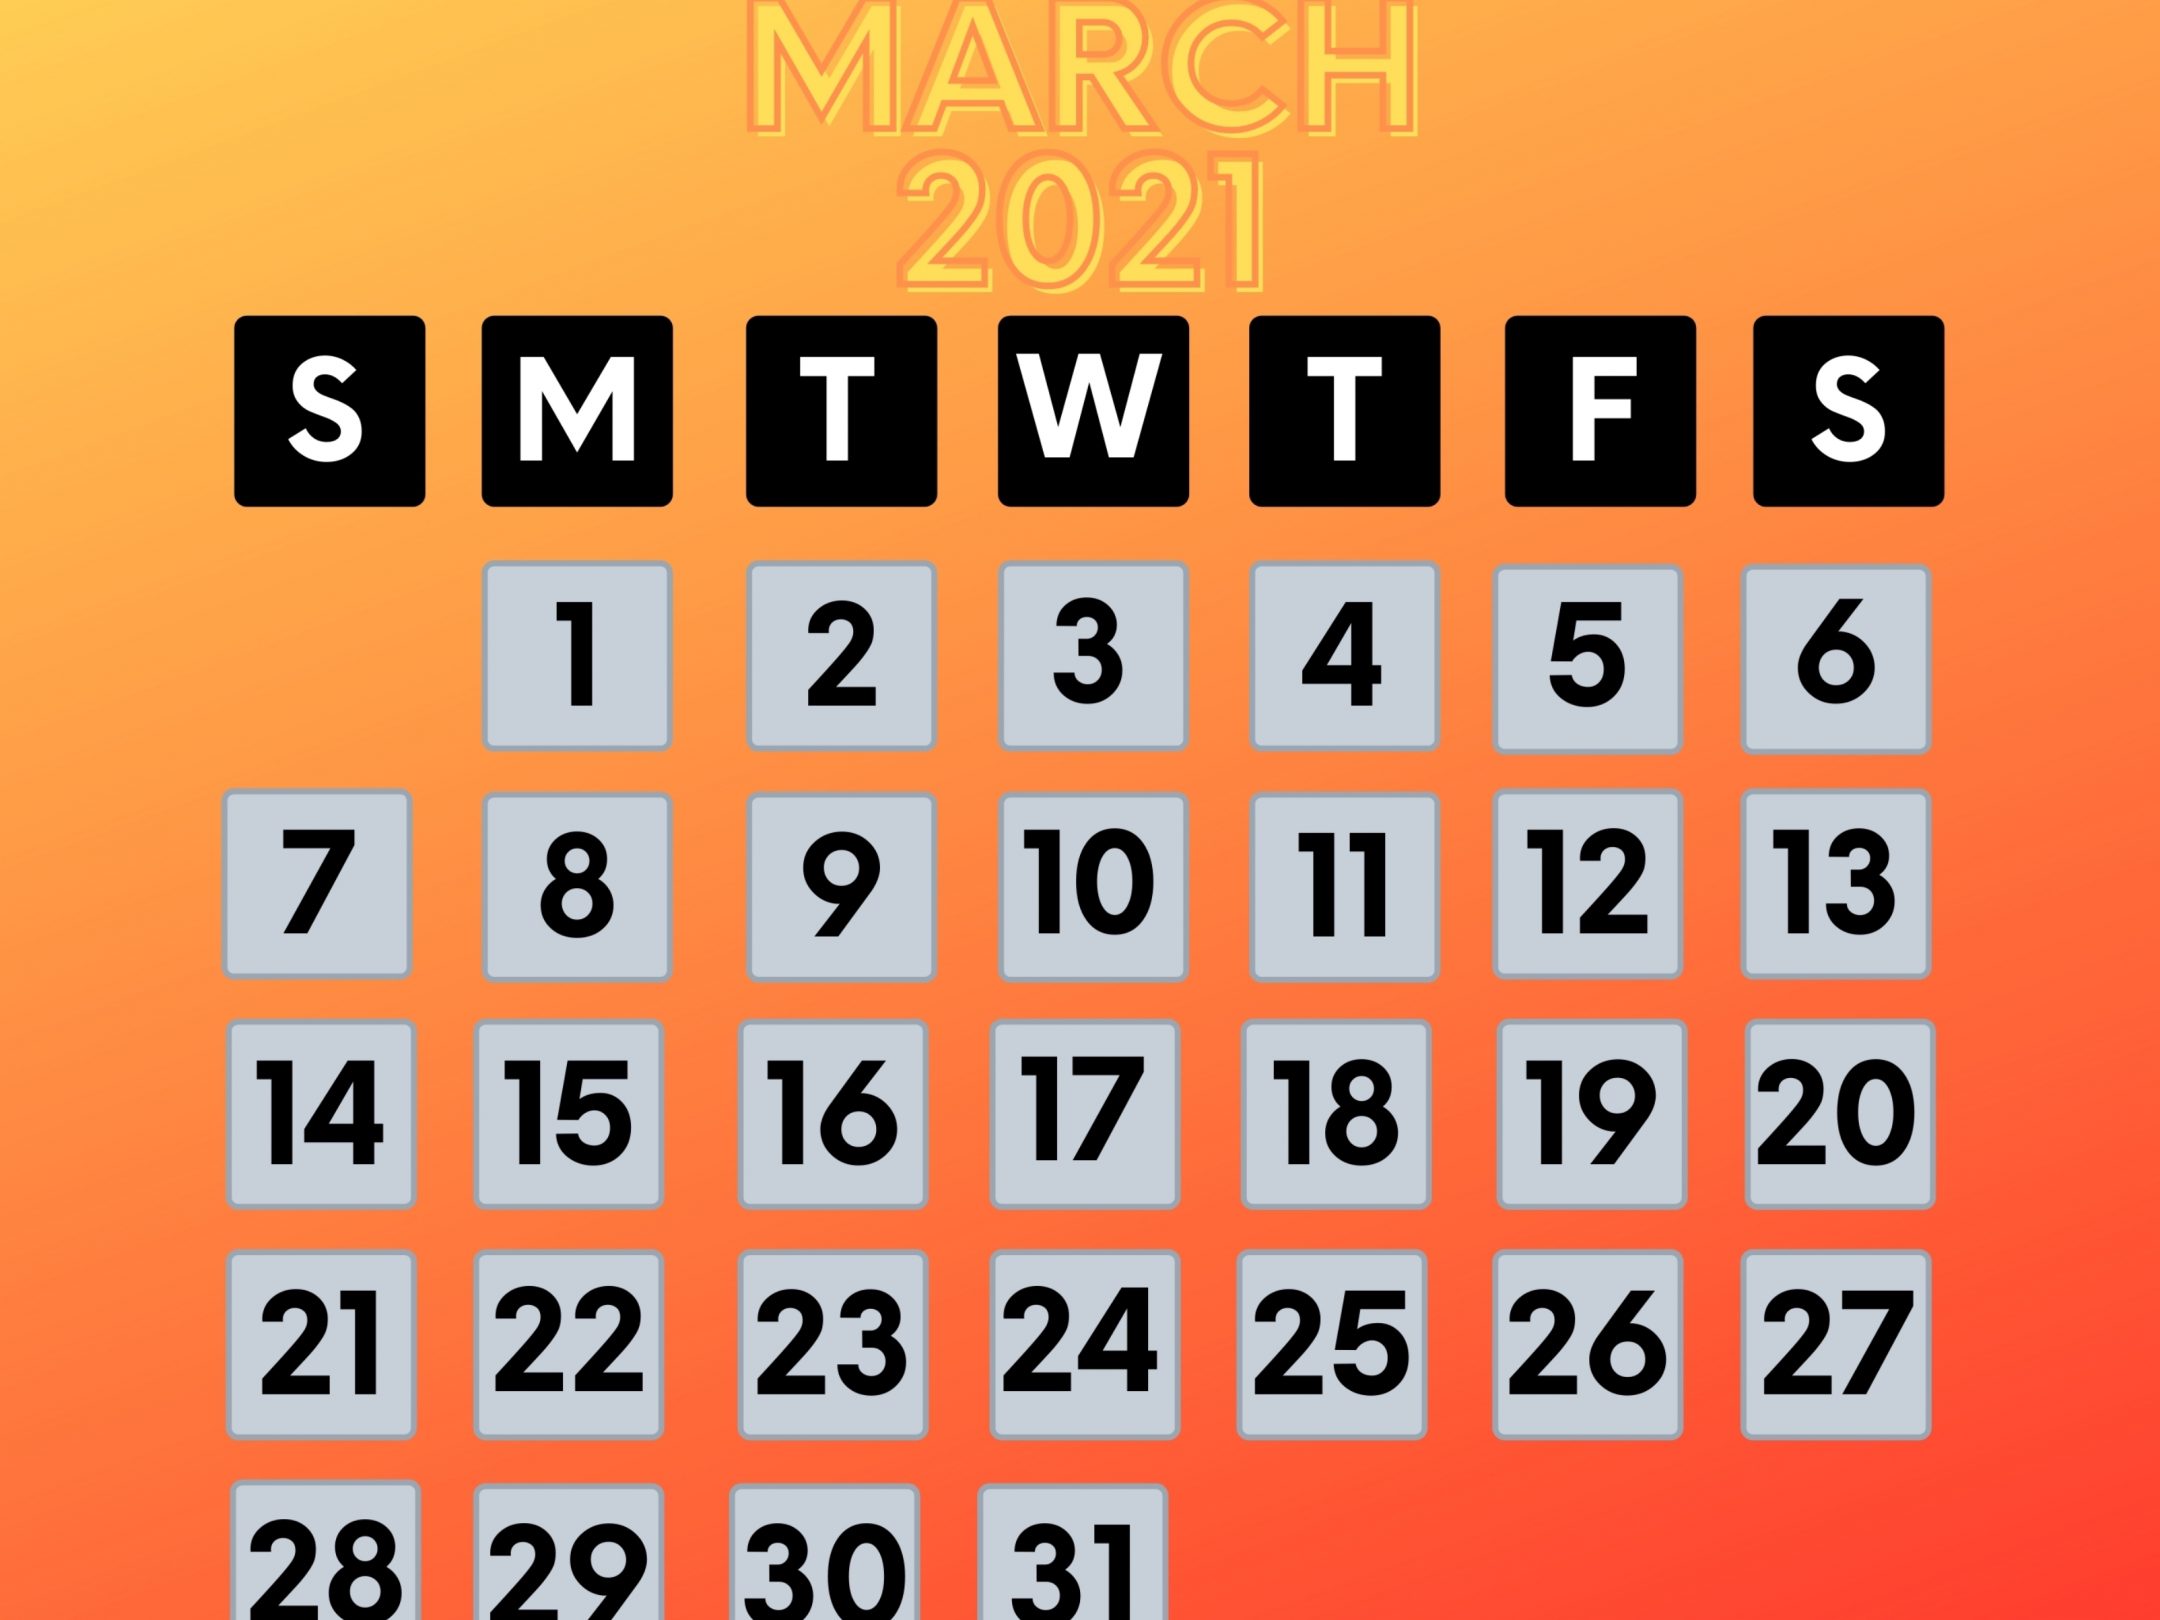 2160x1620 iPad wallpaper 4k March 2021 Calendar iPad Wallpaper 2160x1620 pixels resolution